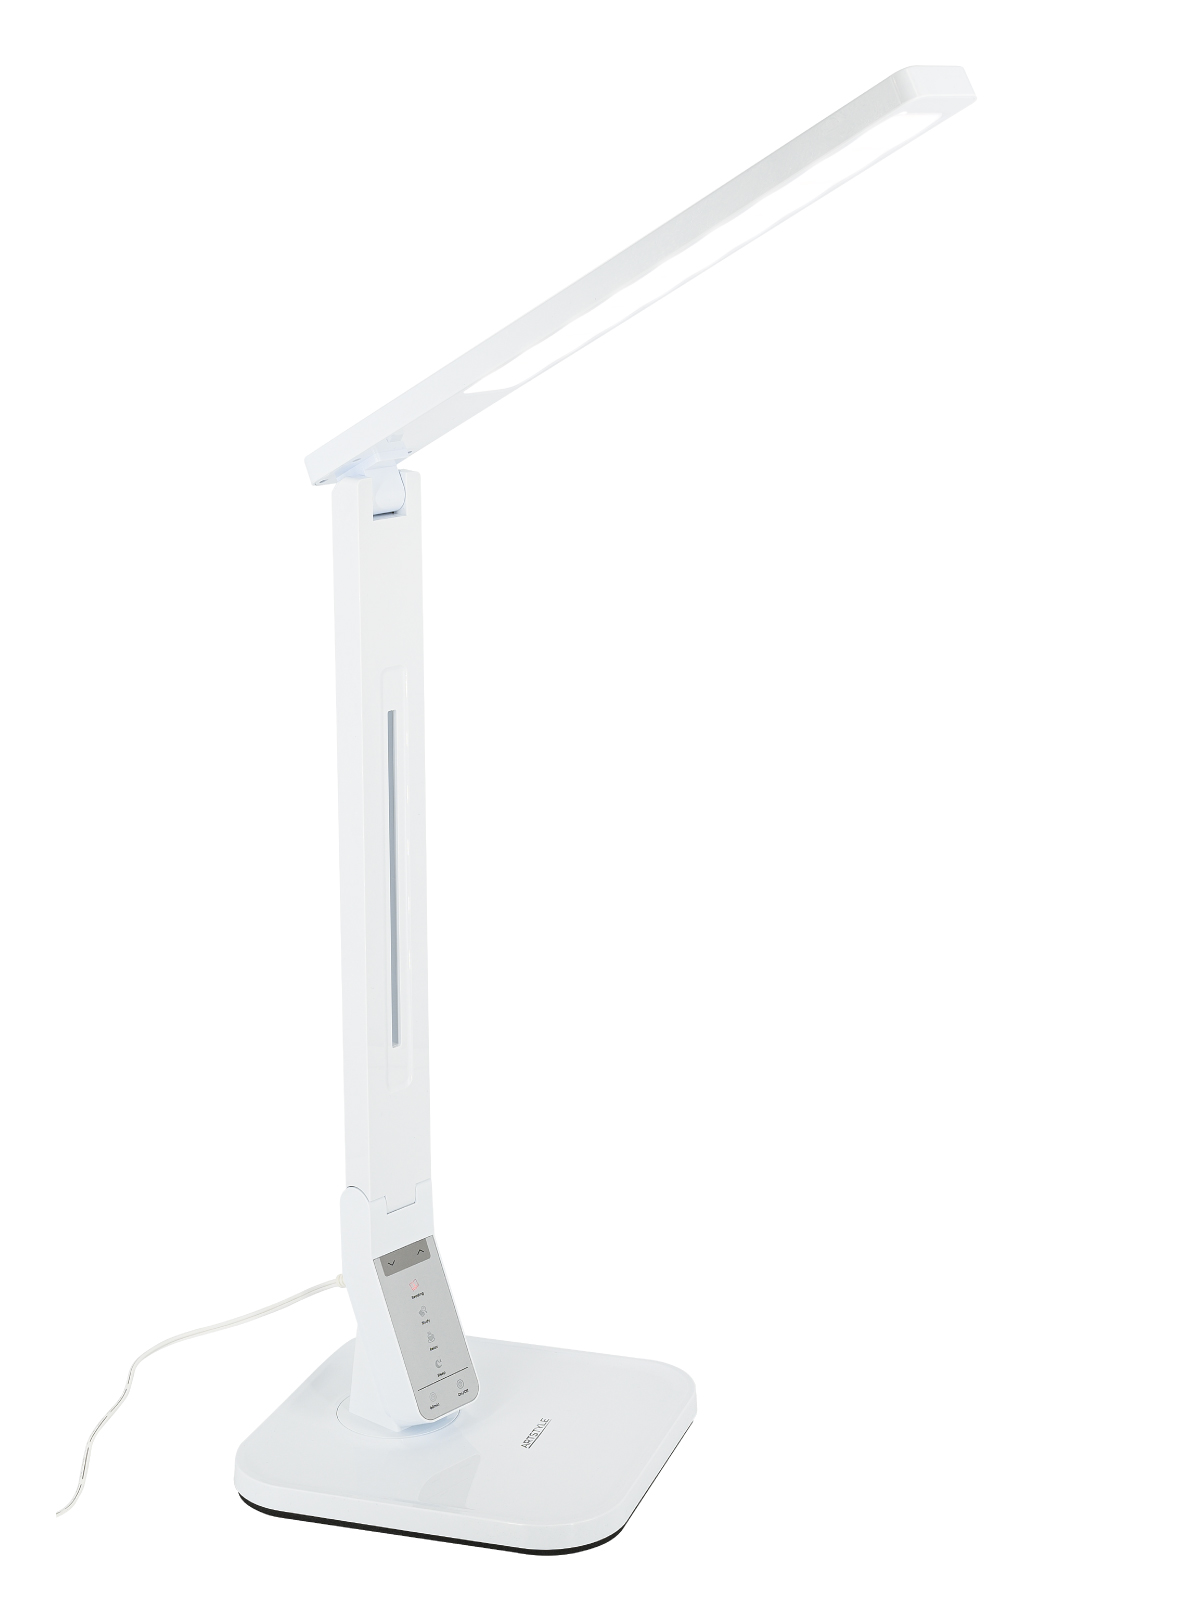 Светильник ARTSTYLE TL-259W белый настольный светодиодный с USB-портом